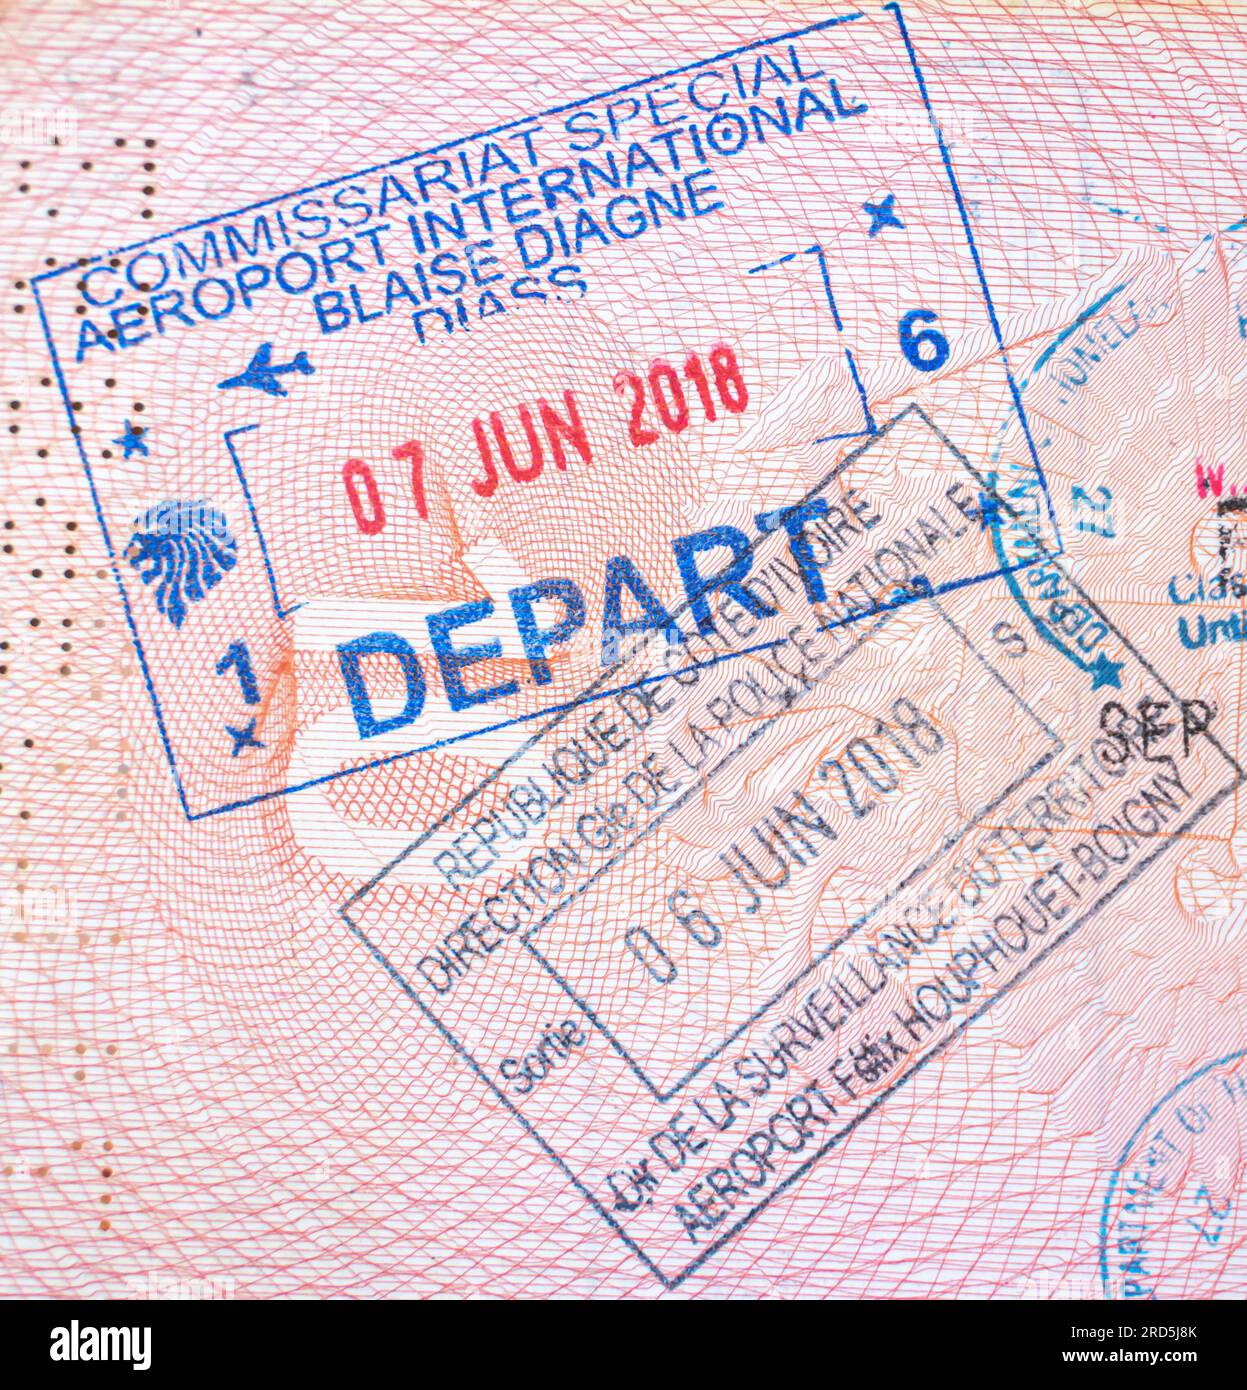 Timbro di uscita del Senegal su un passaporto aperto con il punto di partenza Aéroport de Dakar, Aeroporto Internazionale Blaise Diagne. Francobollo di uscita del Senegal. Foto Stock